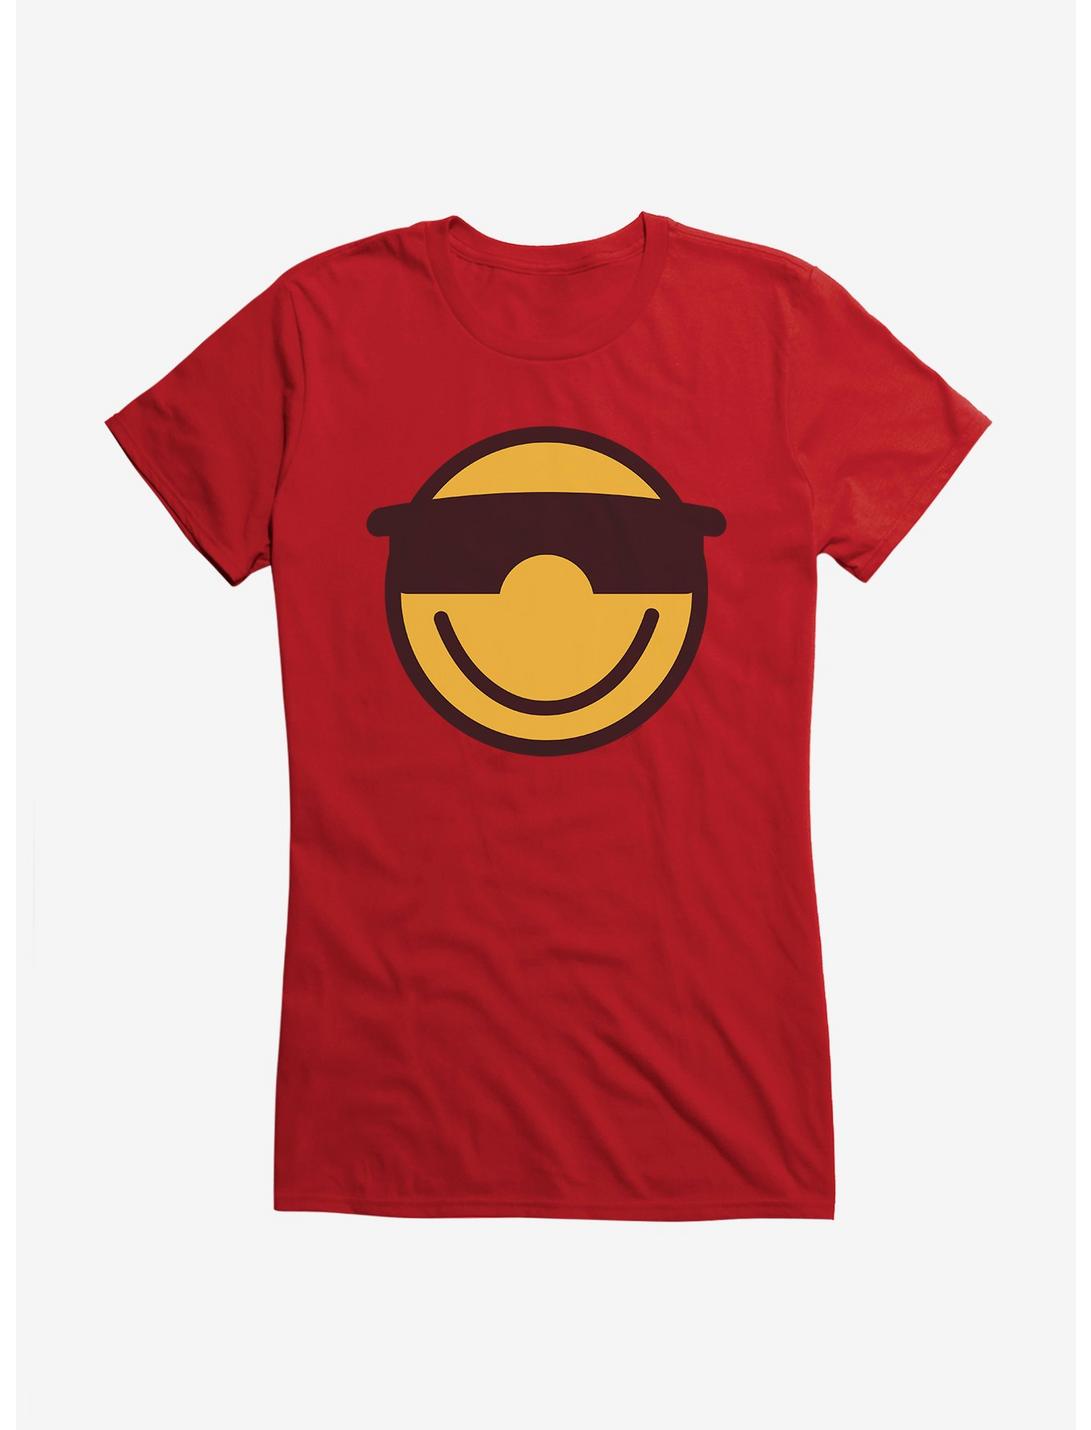 ICreate Sunglass Emoji Girls T-Shirt, RED, hi-res